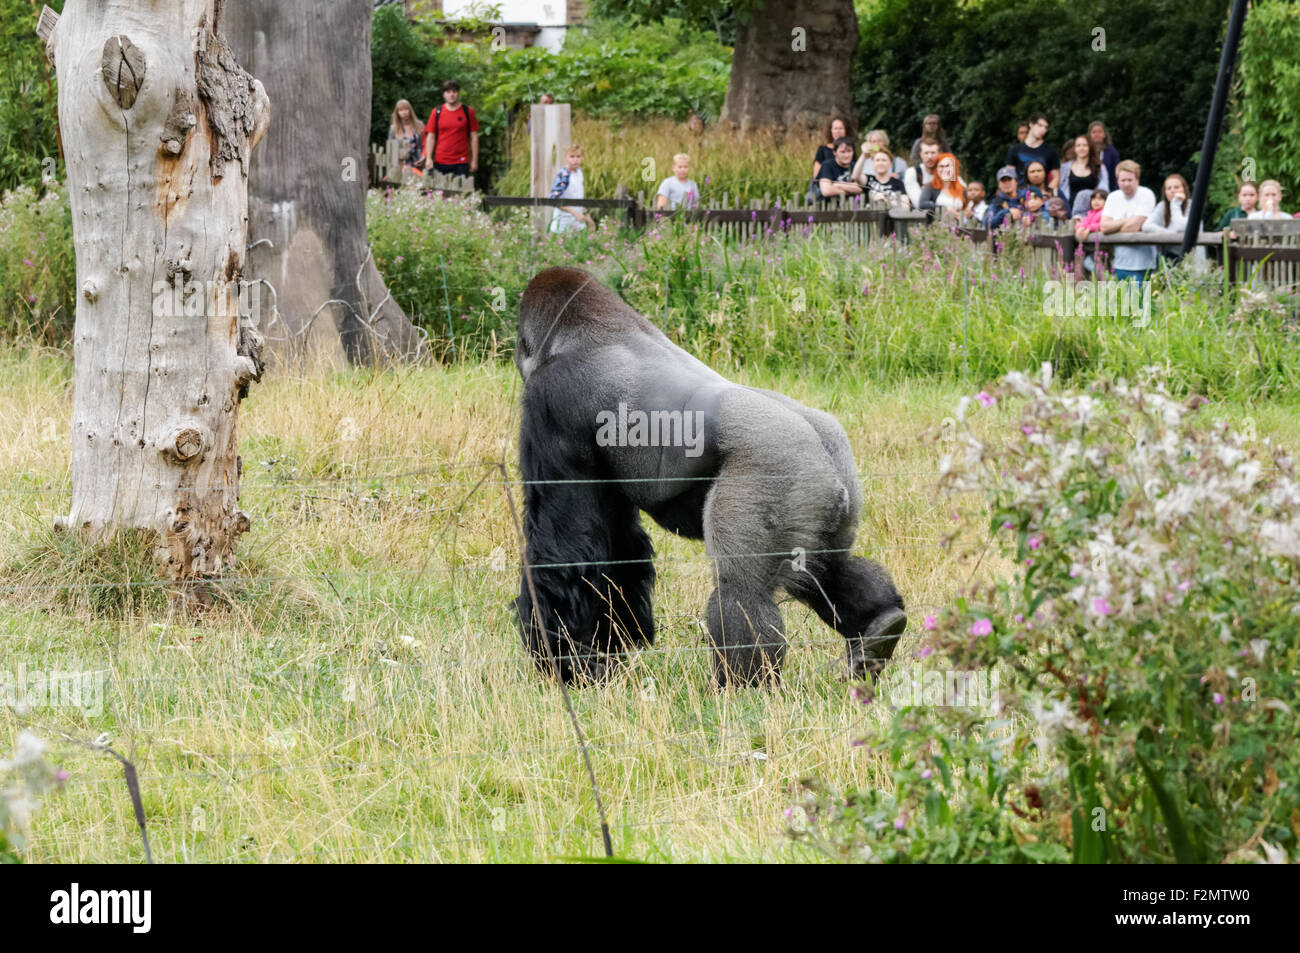 Le gorille de plaine de l'ouest (Gorilla gorilla gorilla) au ZSL Zoo de Londres, Londres Angleterre Royaume-Uni UK Banque D'Images